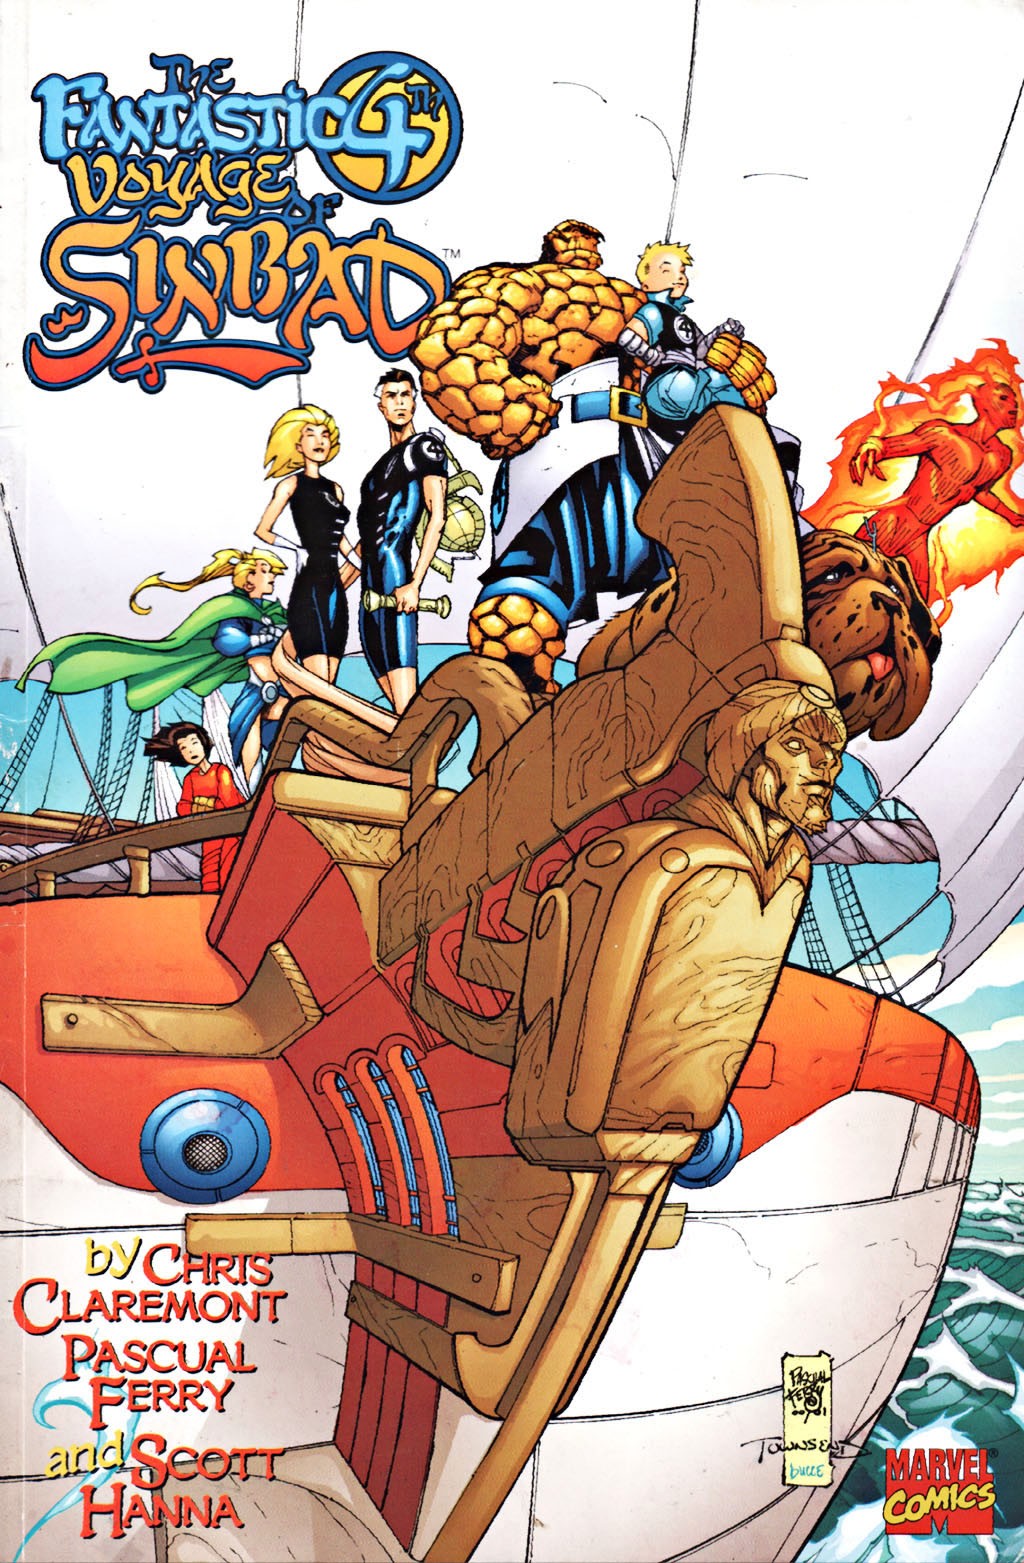 Fantastic 4th Voyage of Sinbad Vol. 1 #1